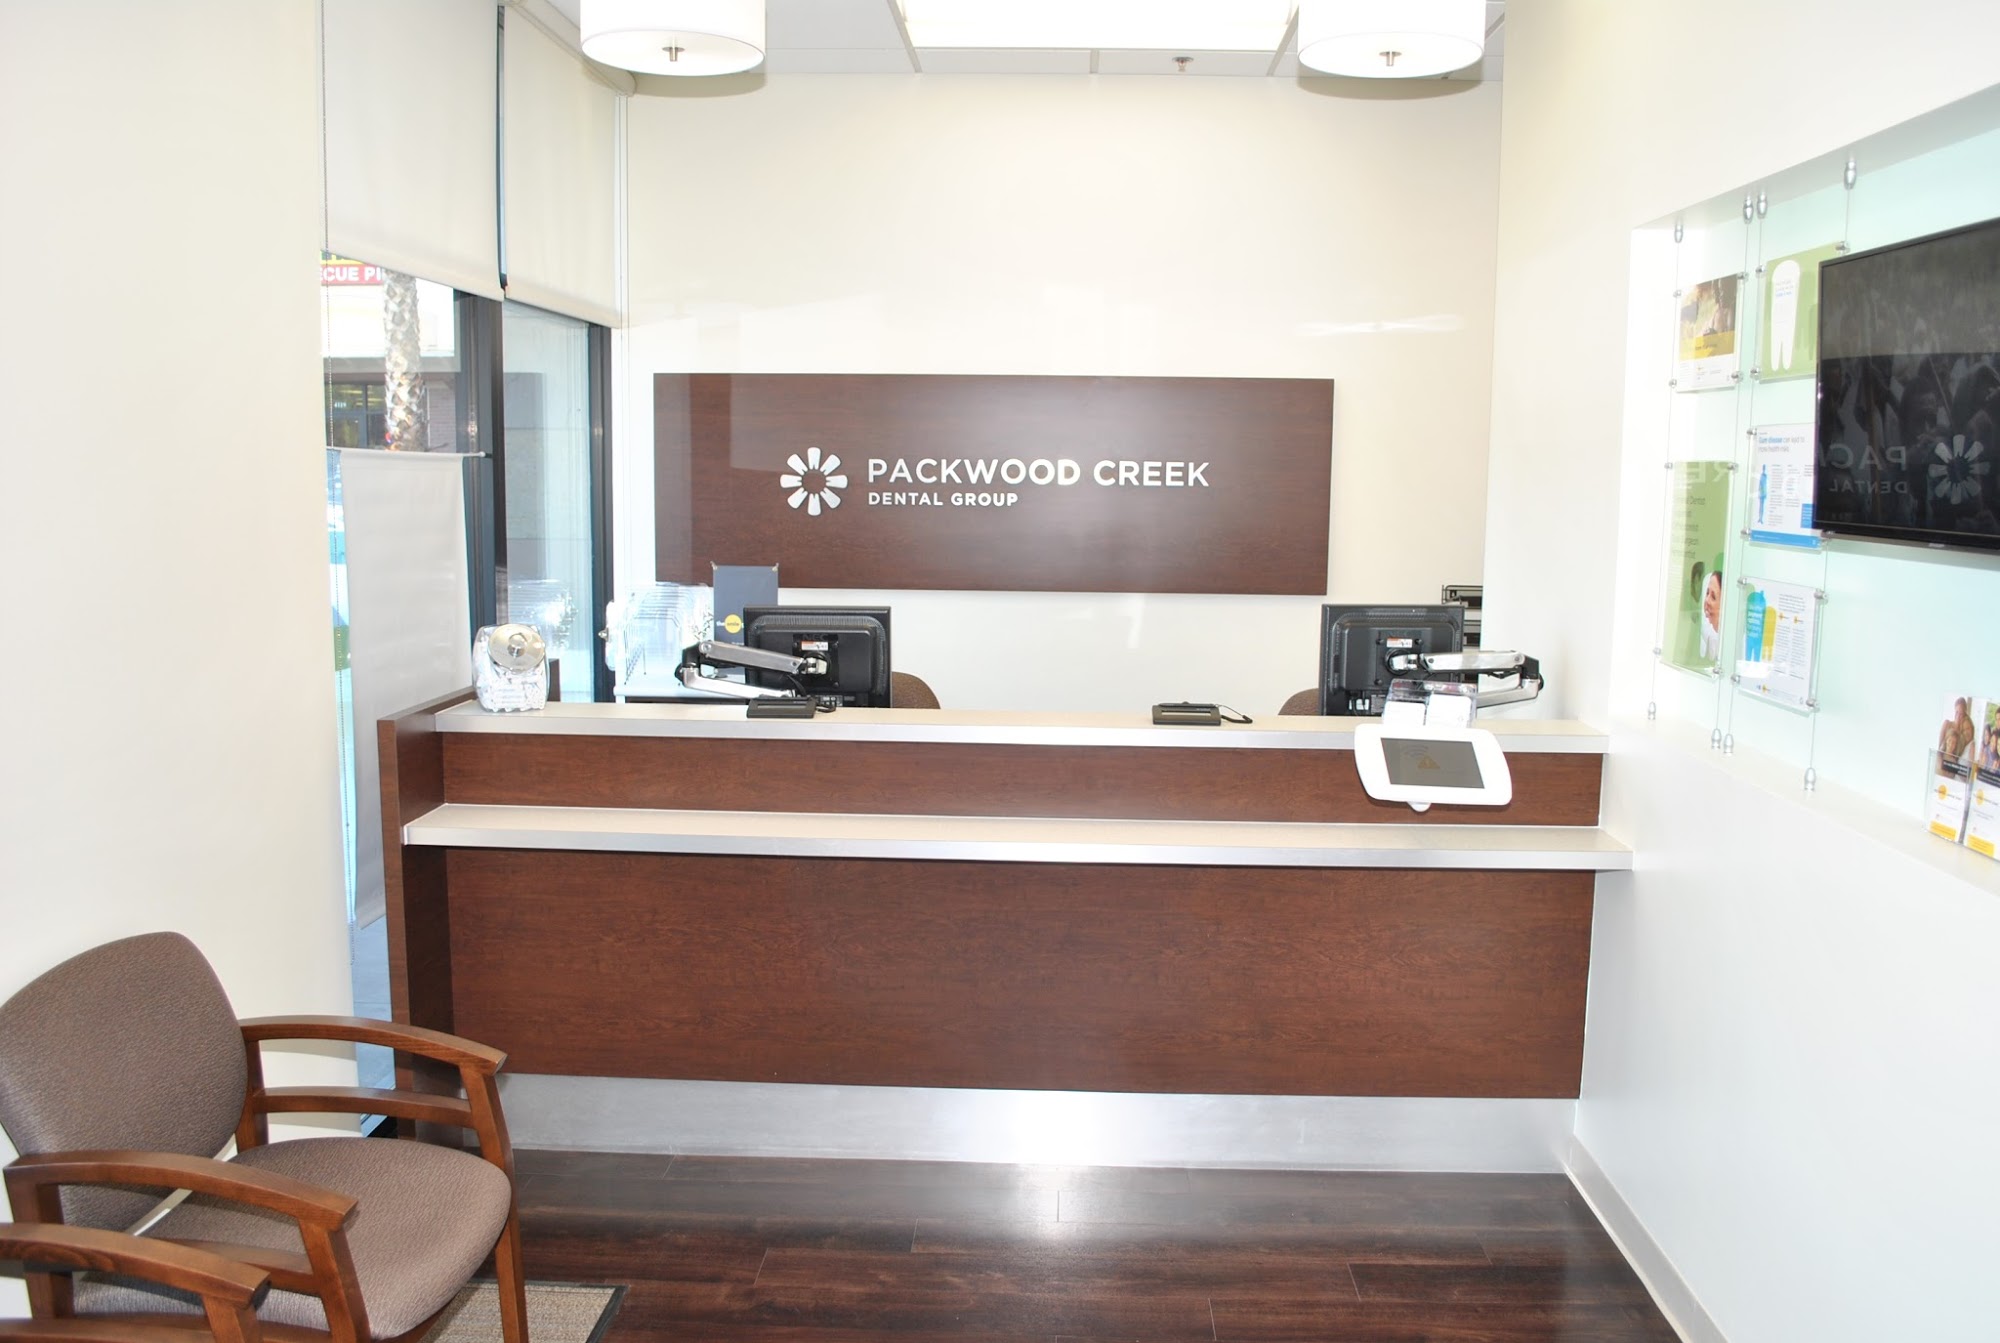 Packwood Creek Dental Group